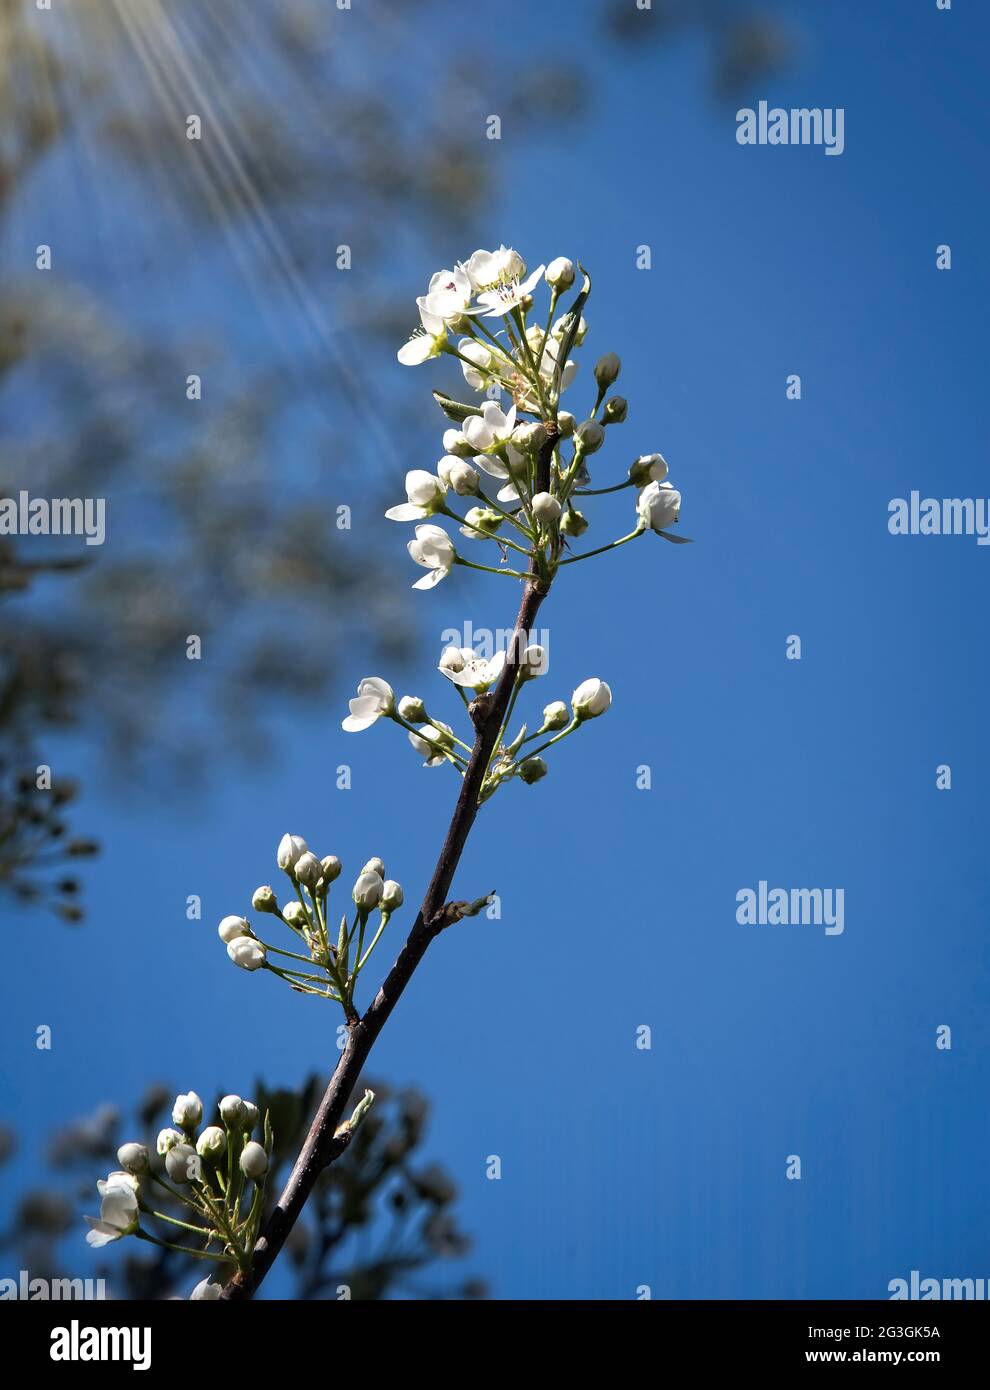 Caalleries blanches en fleurs Pear Tree avec un arrière-plan doux et des rayons de soleil Banque D'Images